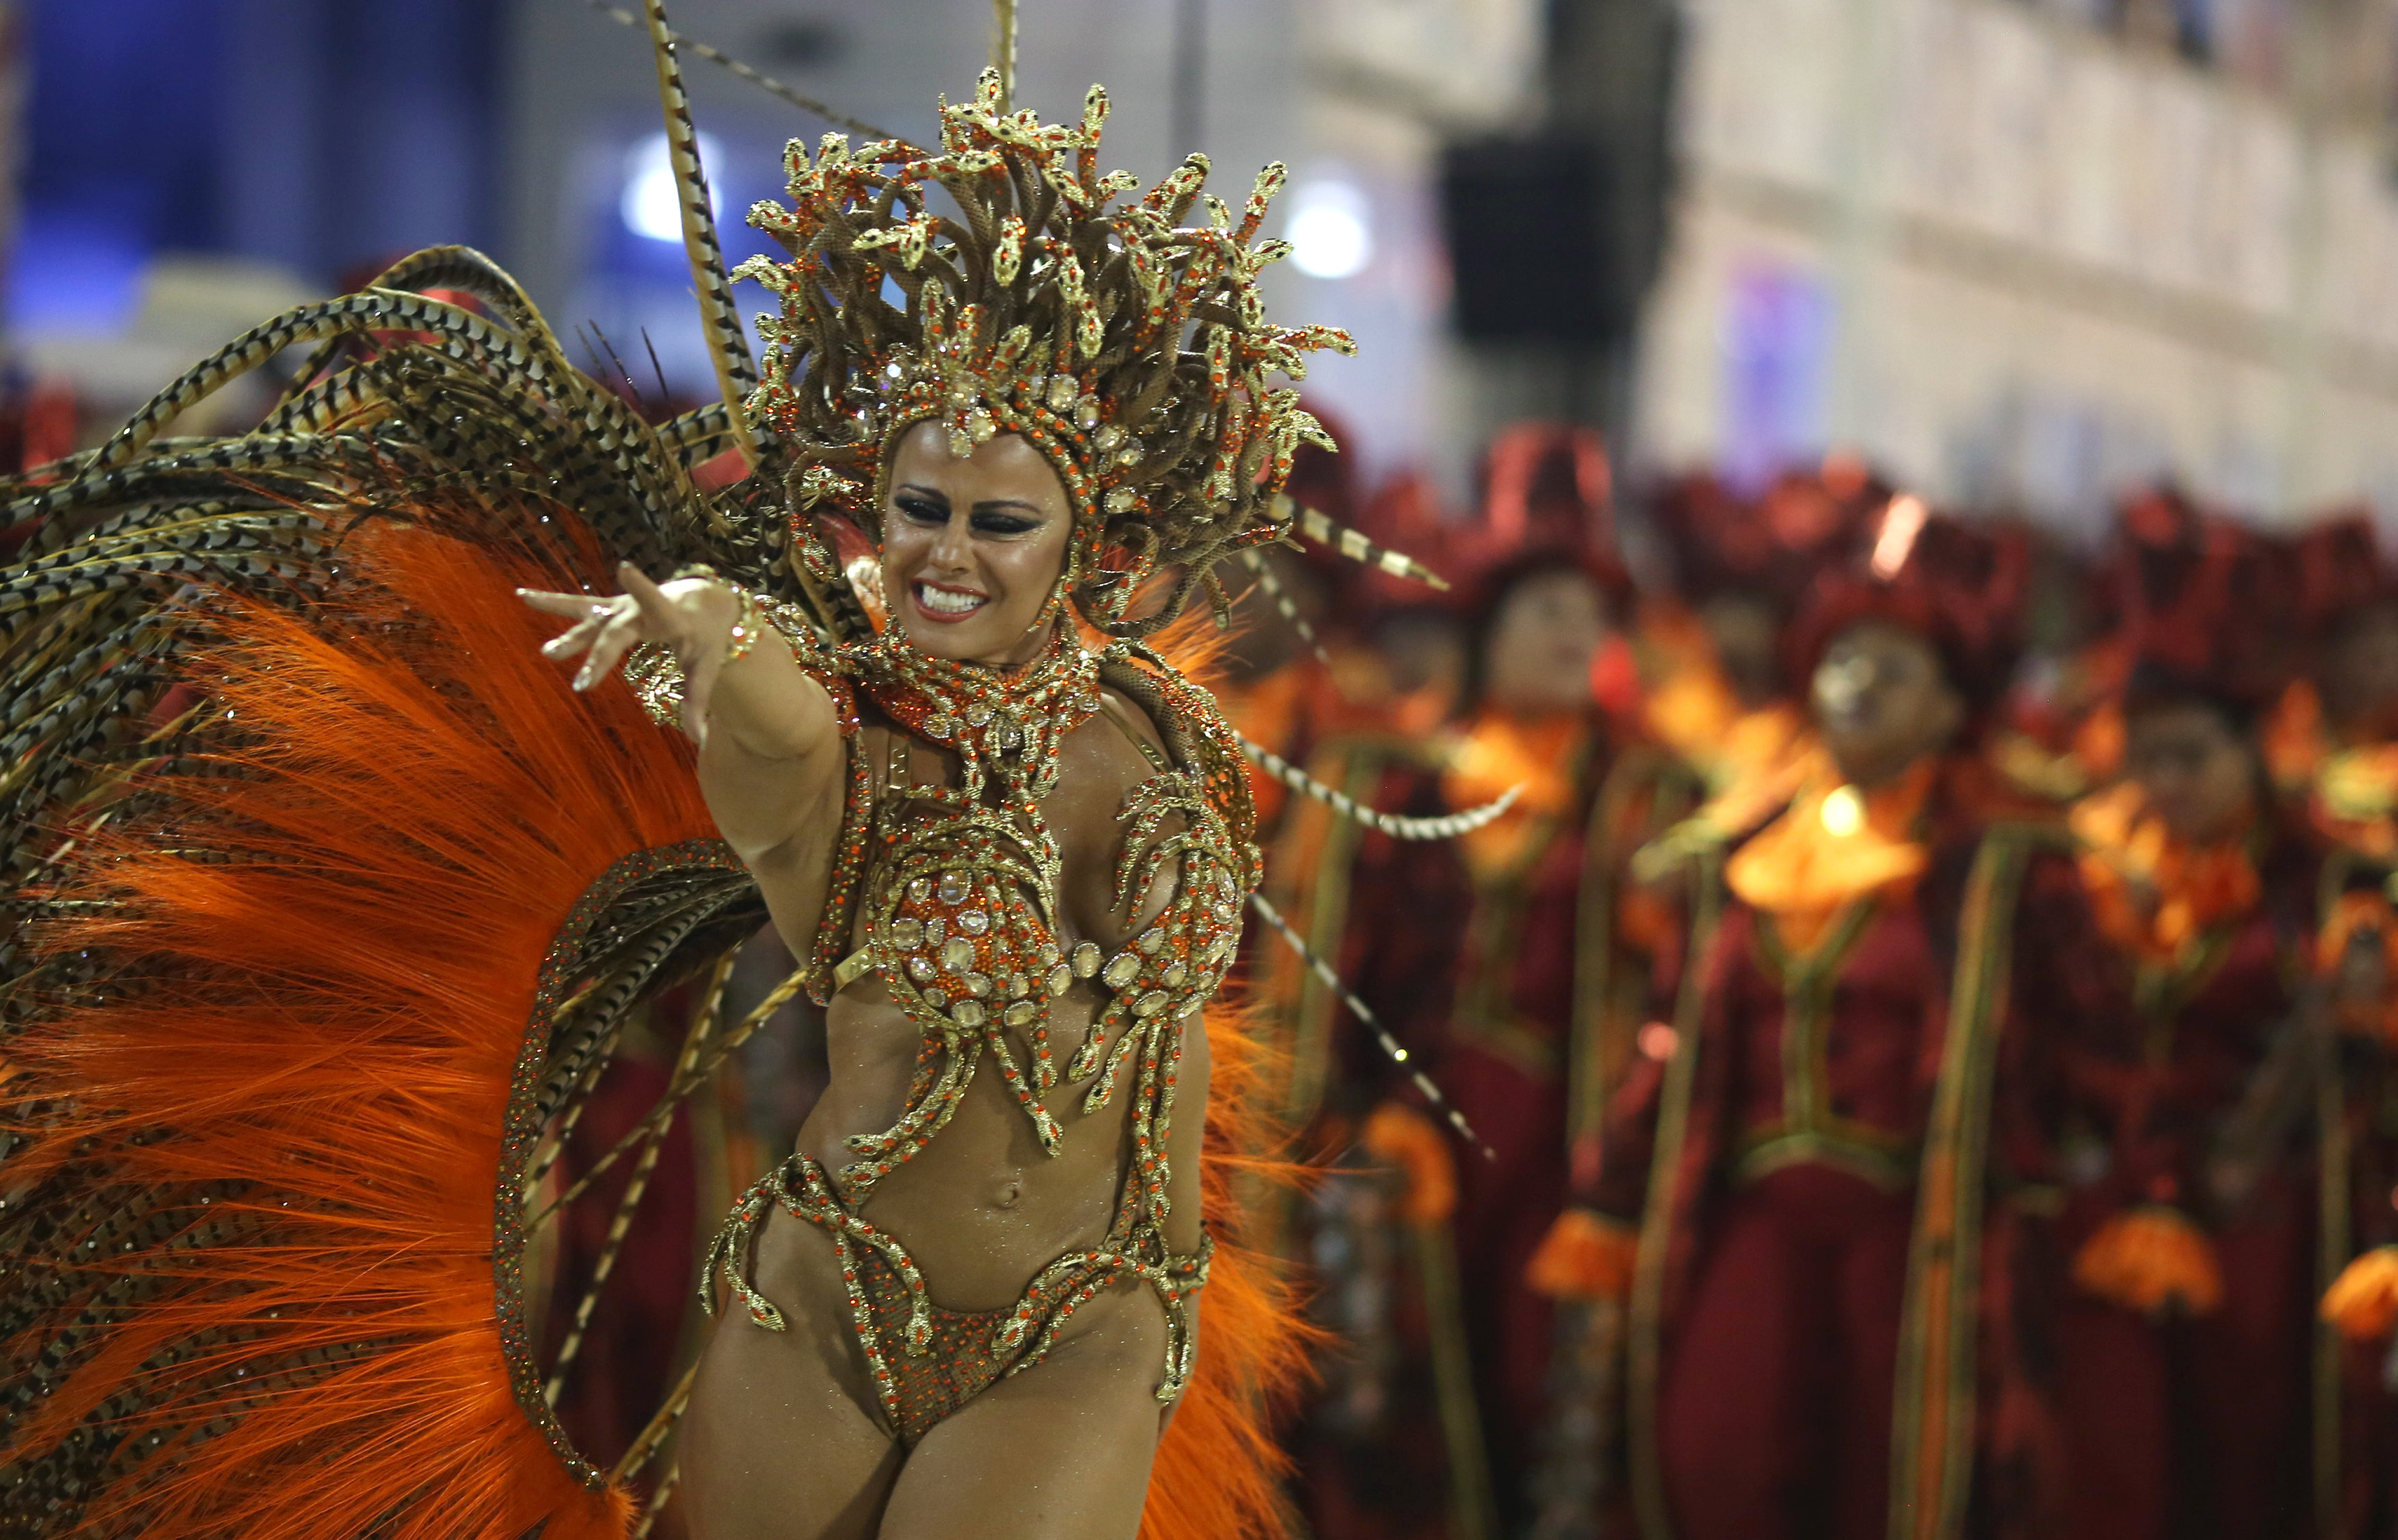 فتاة تؤدى عرض فنى خلال احتفالات كرنفال رقصة السامبا فى البرازيل